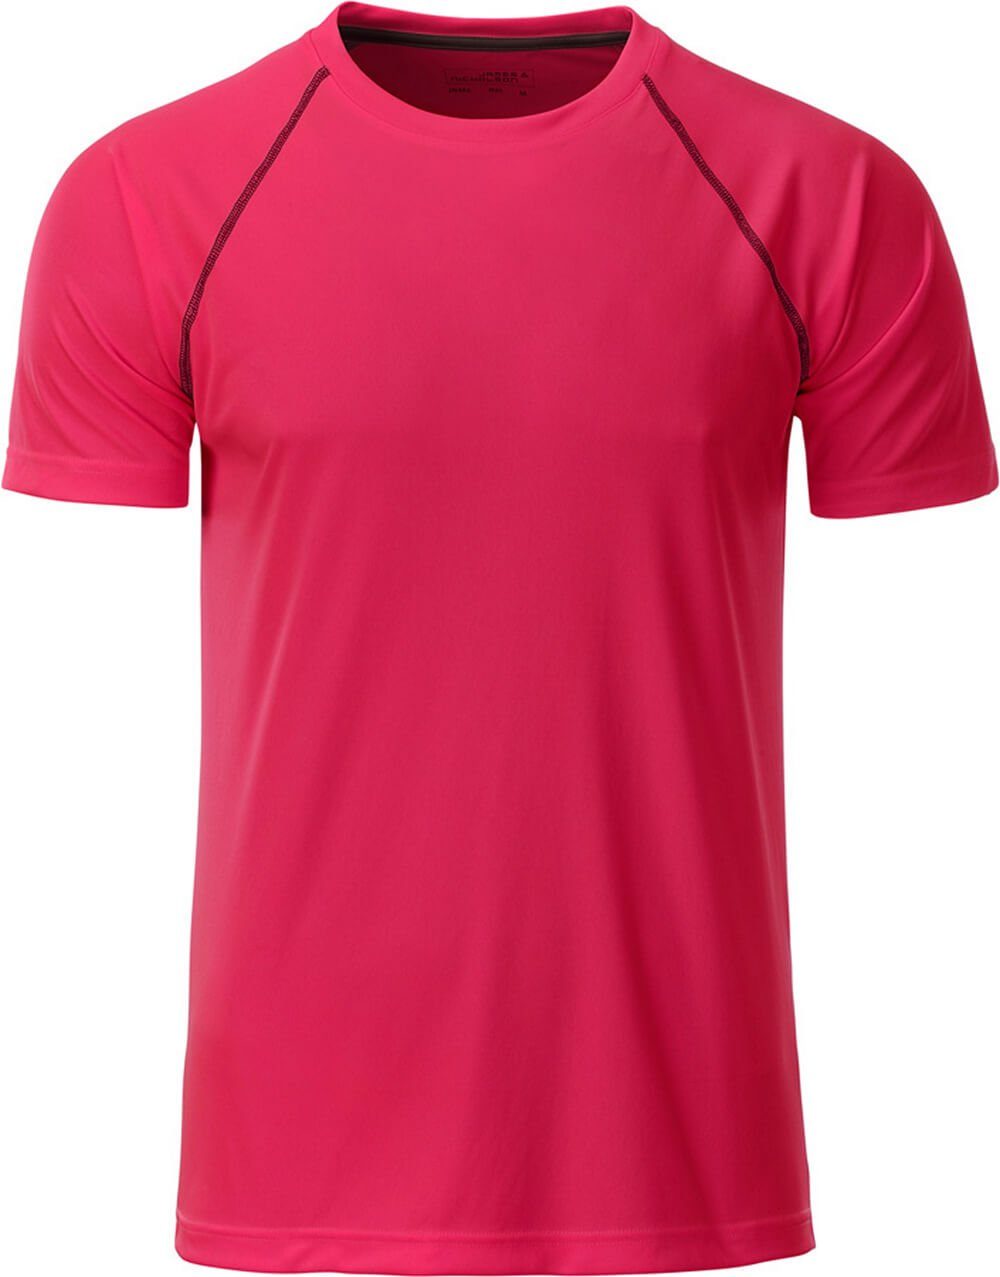 JN Funktions-Shirt trocknend Nicholson schnell Herren James & bright 496 James & Nicholson pink/titan Funktionsshirt